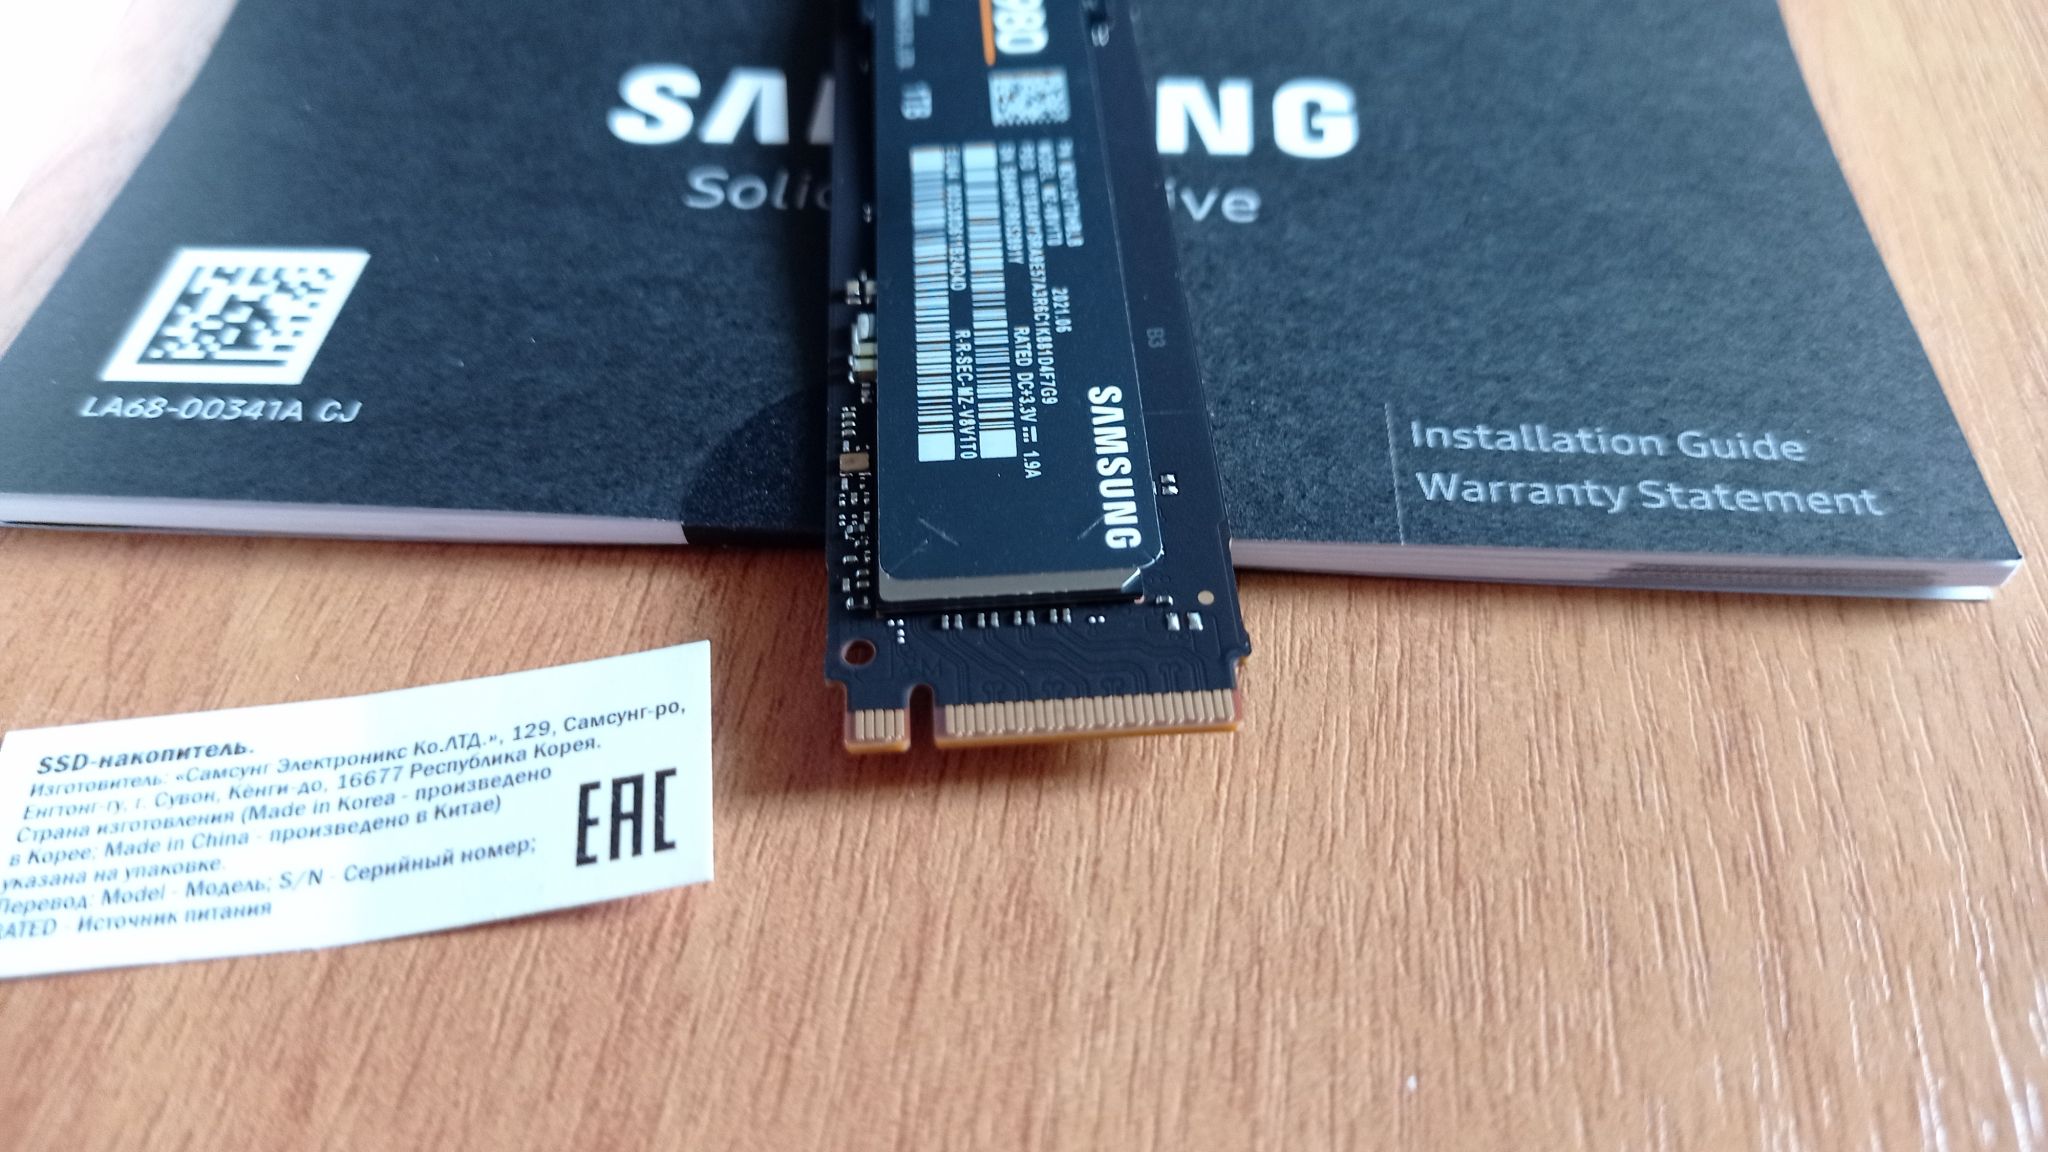 Ssd 980 mz v8v1t0bw. Samsung SSD 980. SSD Samsung 980 MZ v8v1t0bw. 1000 ГБ SSD M.2 накопитель Samsung 980 [MZ-v8v1t0bw]. Samsung SSD m2 коробка.